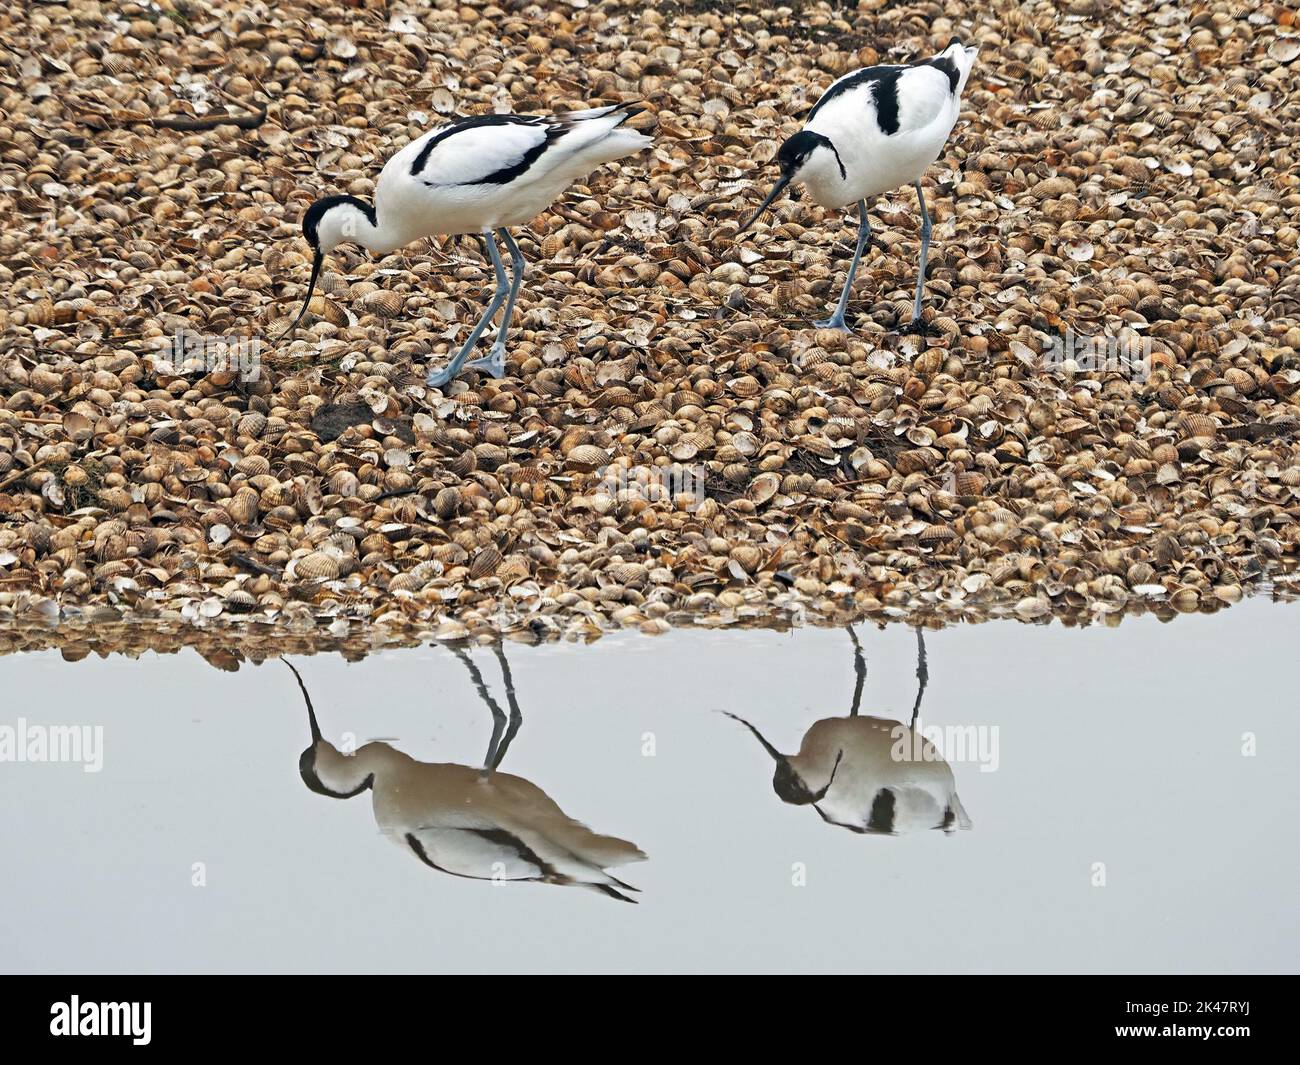 Coppia di Avocets o Avocets pied (Recurvirostra avosetta) con becco ricurvo riflesso nella laguna di acqua naturale - Leighton Moss RSPB Reserve, Inghilterra, Regno Unito Foto Stock